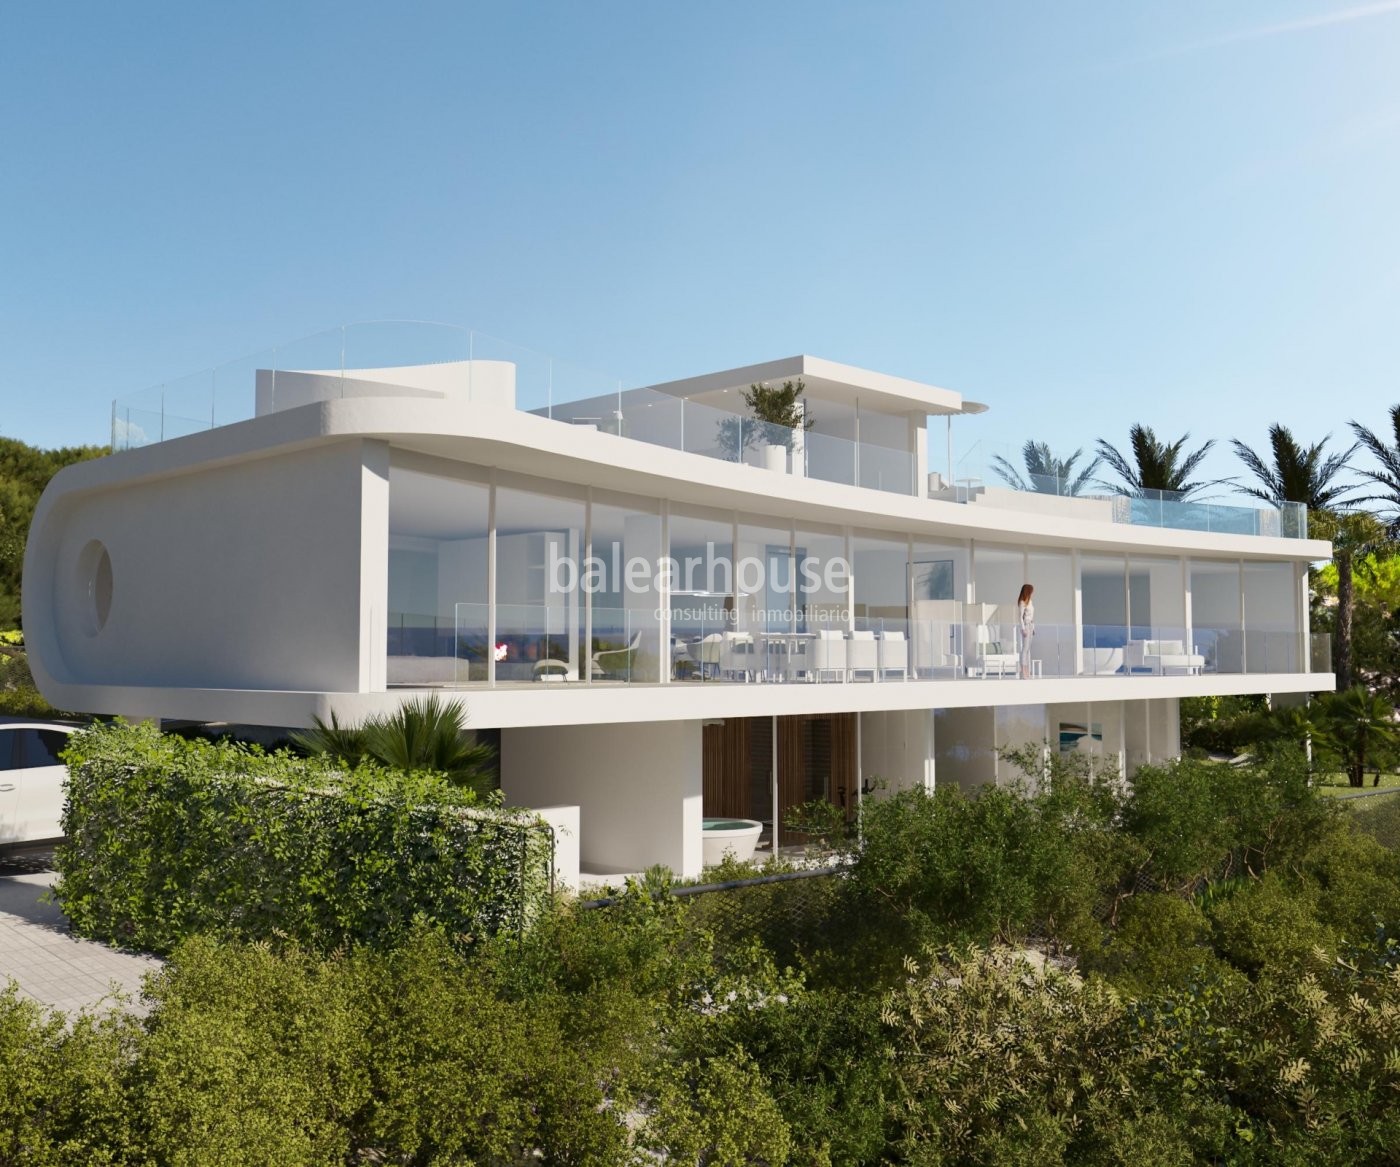 Extraordinary villa unique for its design and views located on the seafront in Porto Cristo.